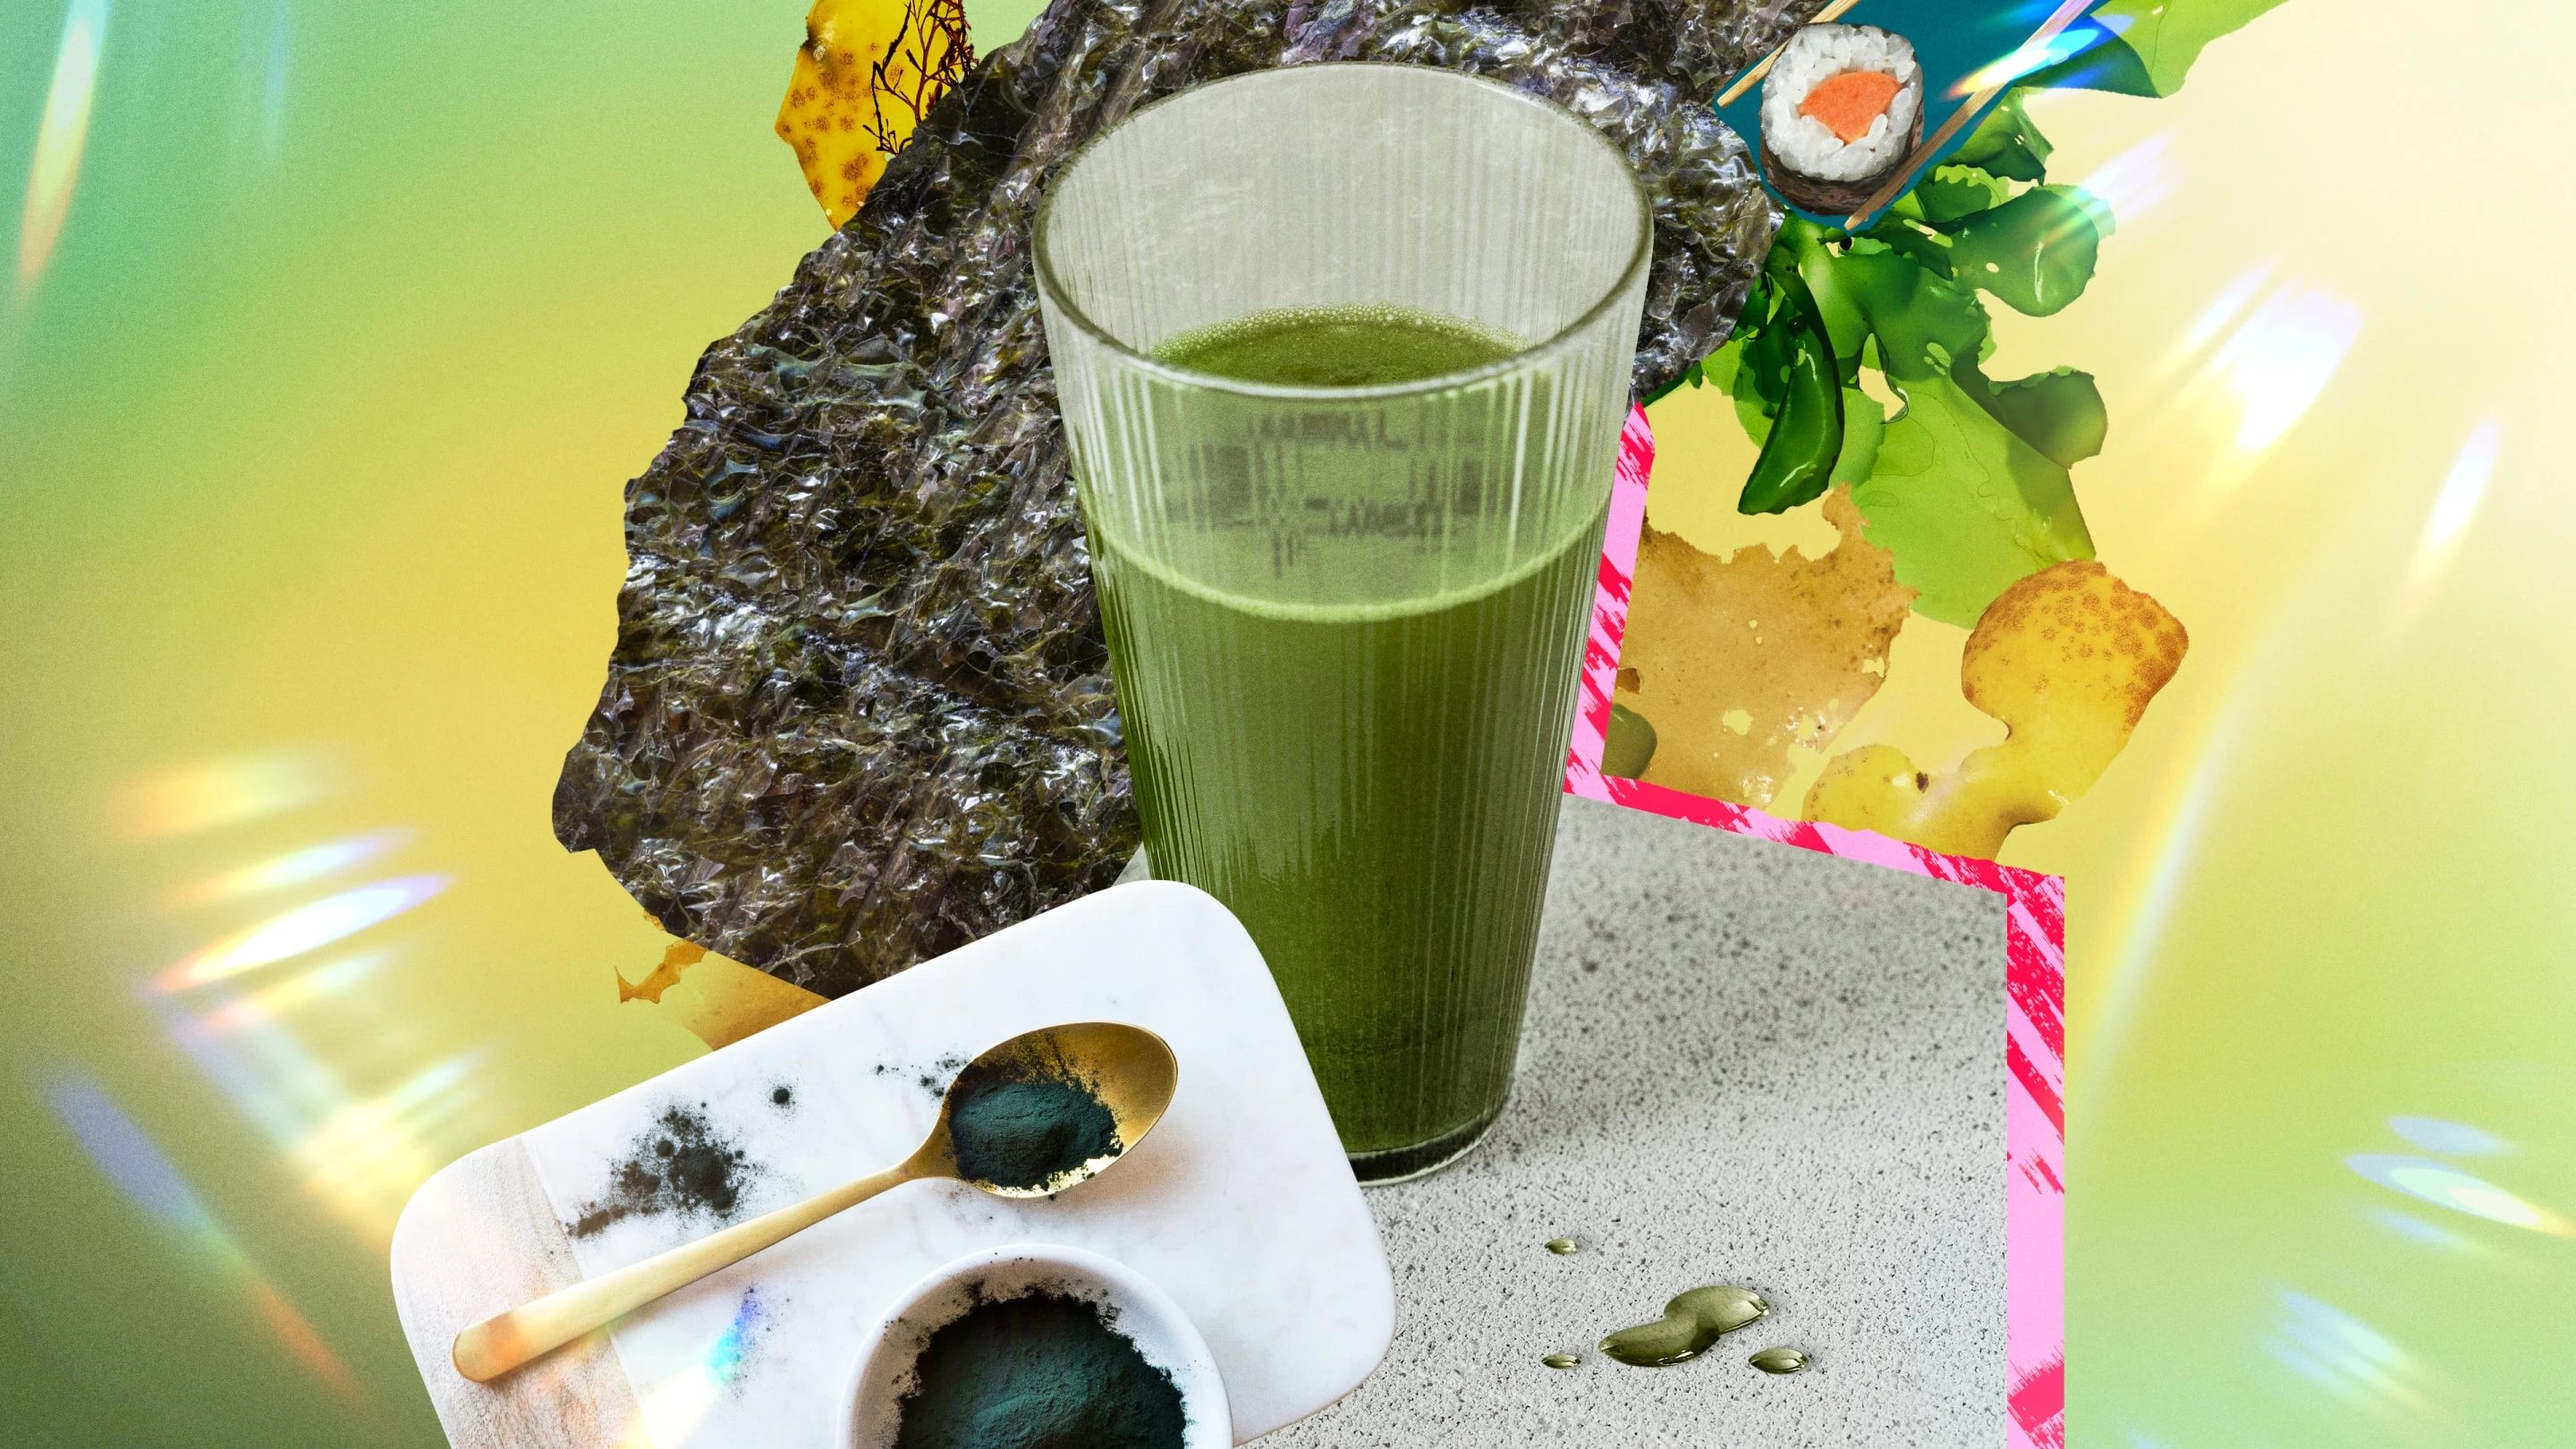 Suco verde em copo centrado envolto por uma colagem de itens relacionados a algas (como sushi, algas em pó, hashis e algas cozidas).